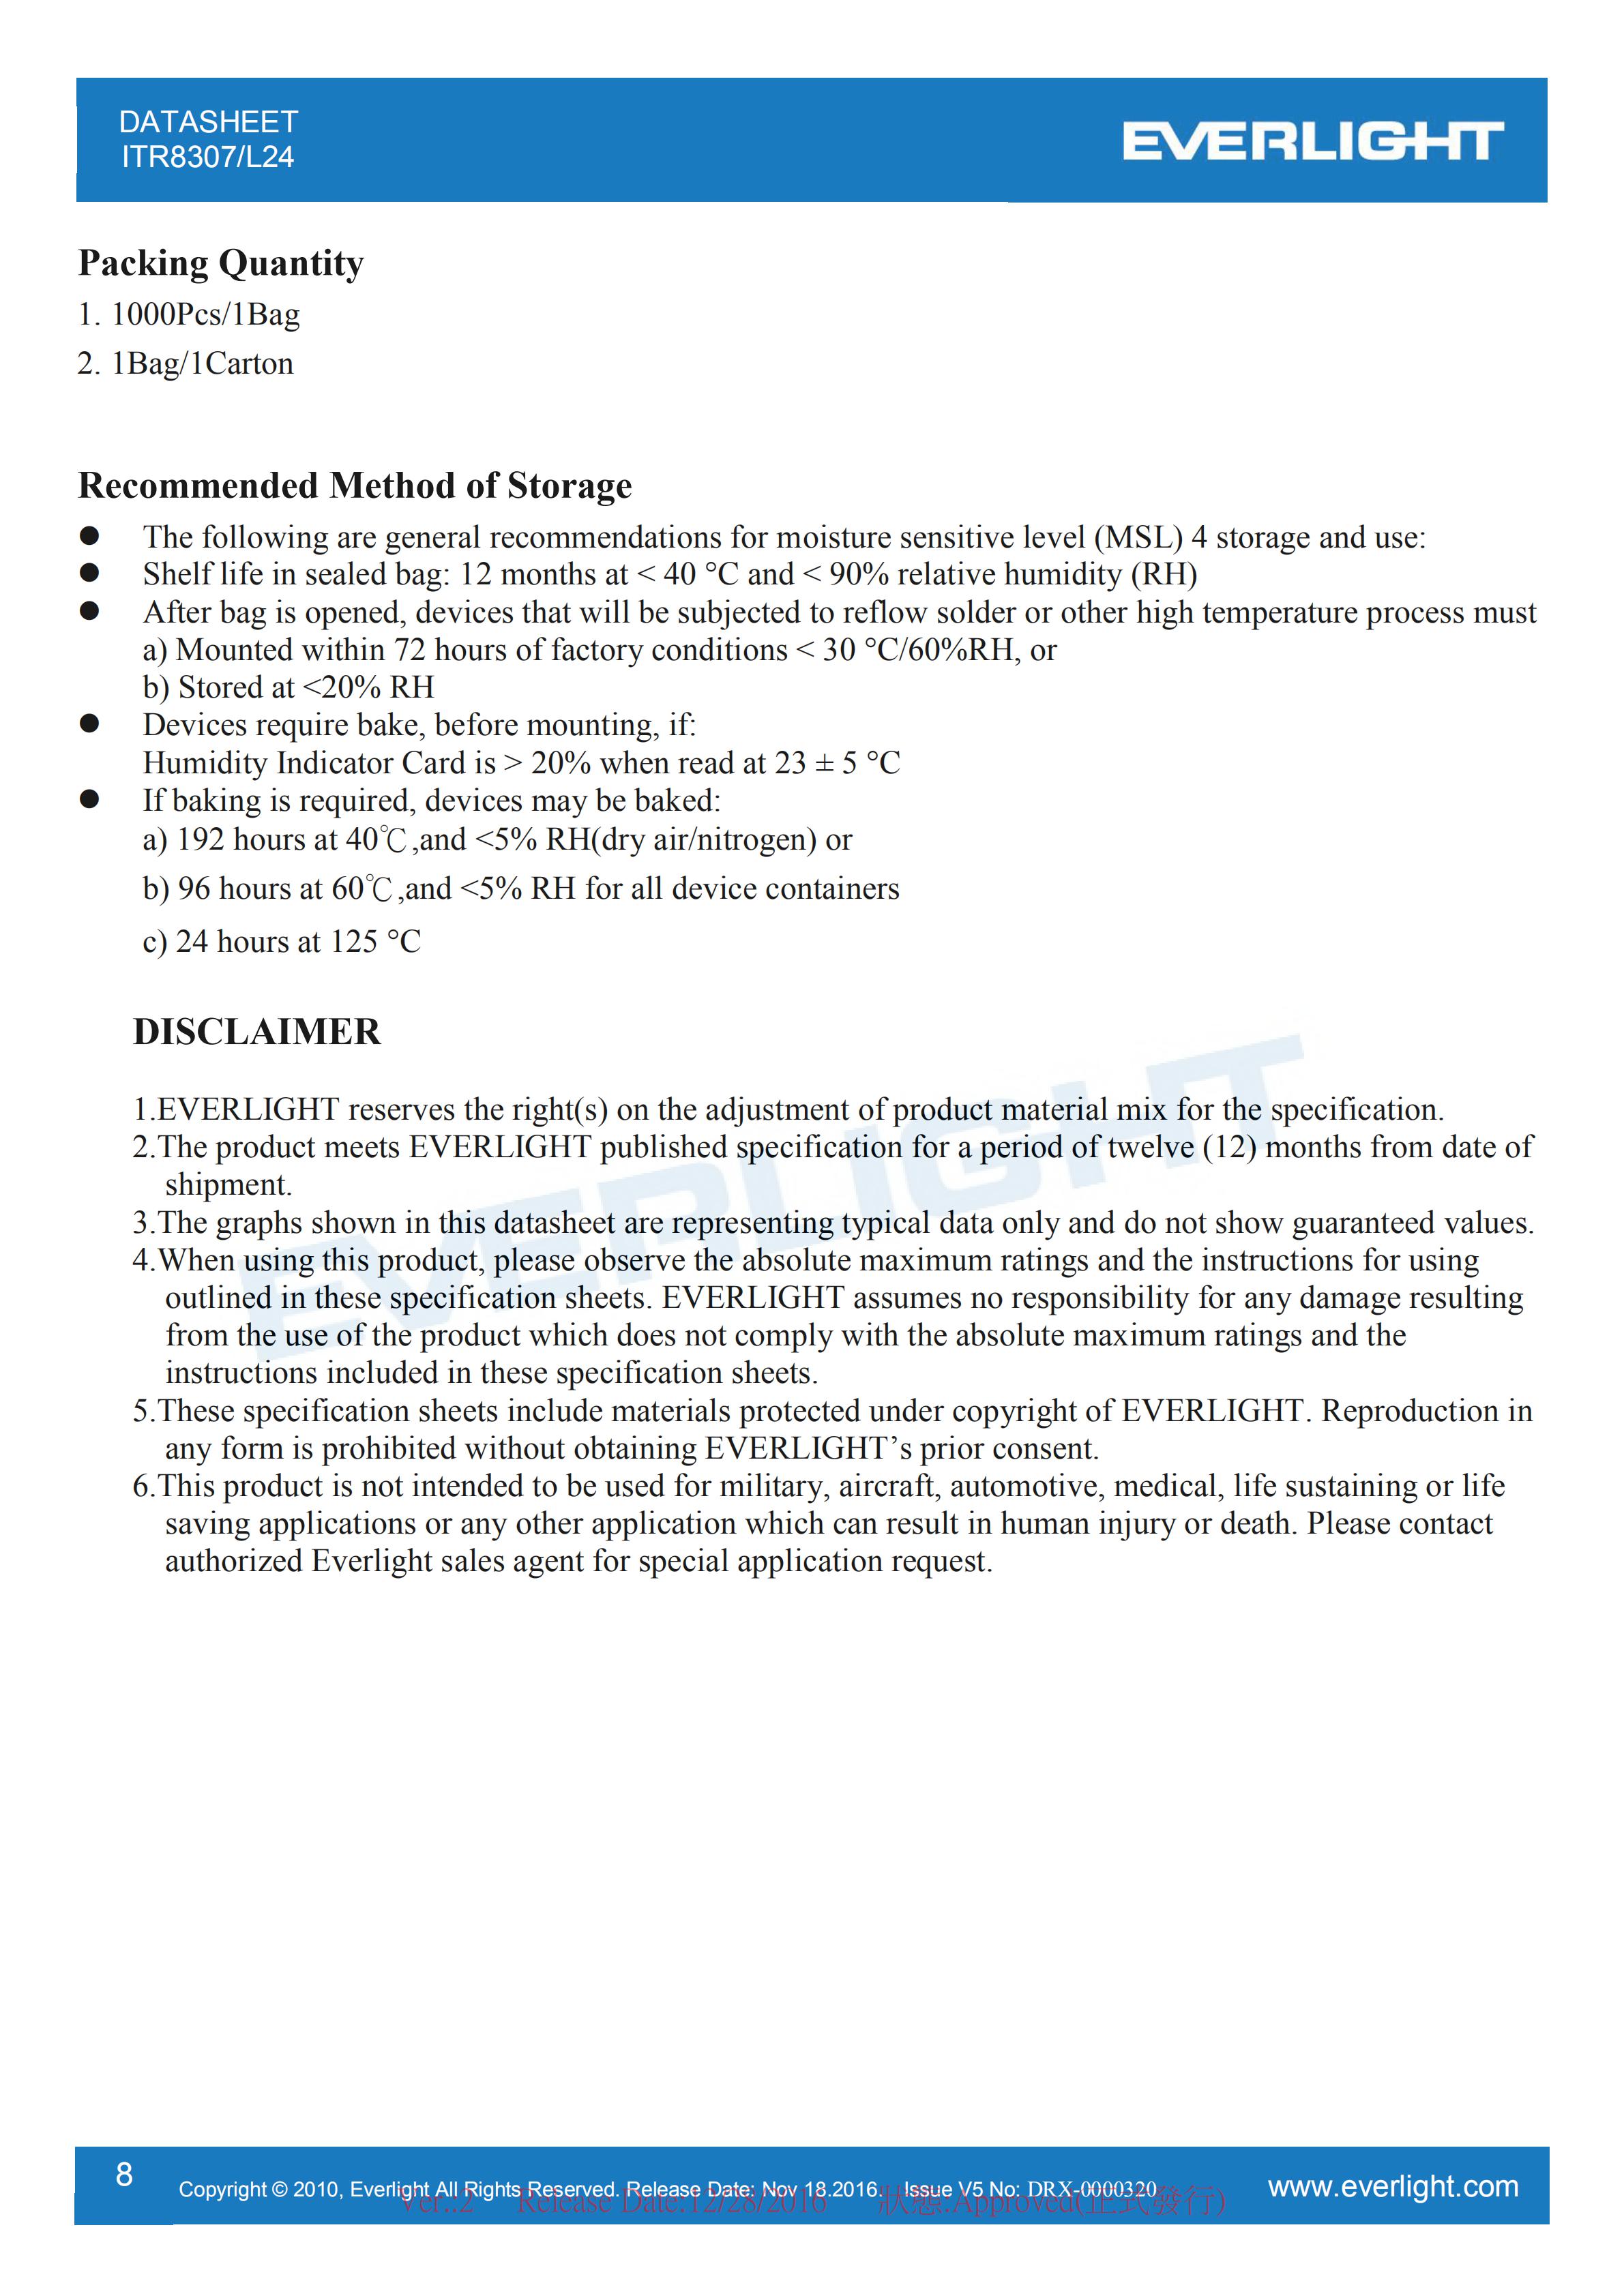 亿光直插式光电开关ITR8307-L24传感器参数及规格书(PDF 数据表)